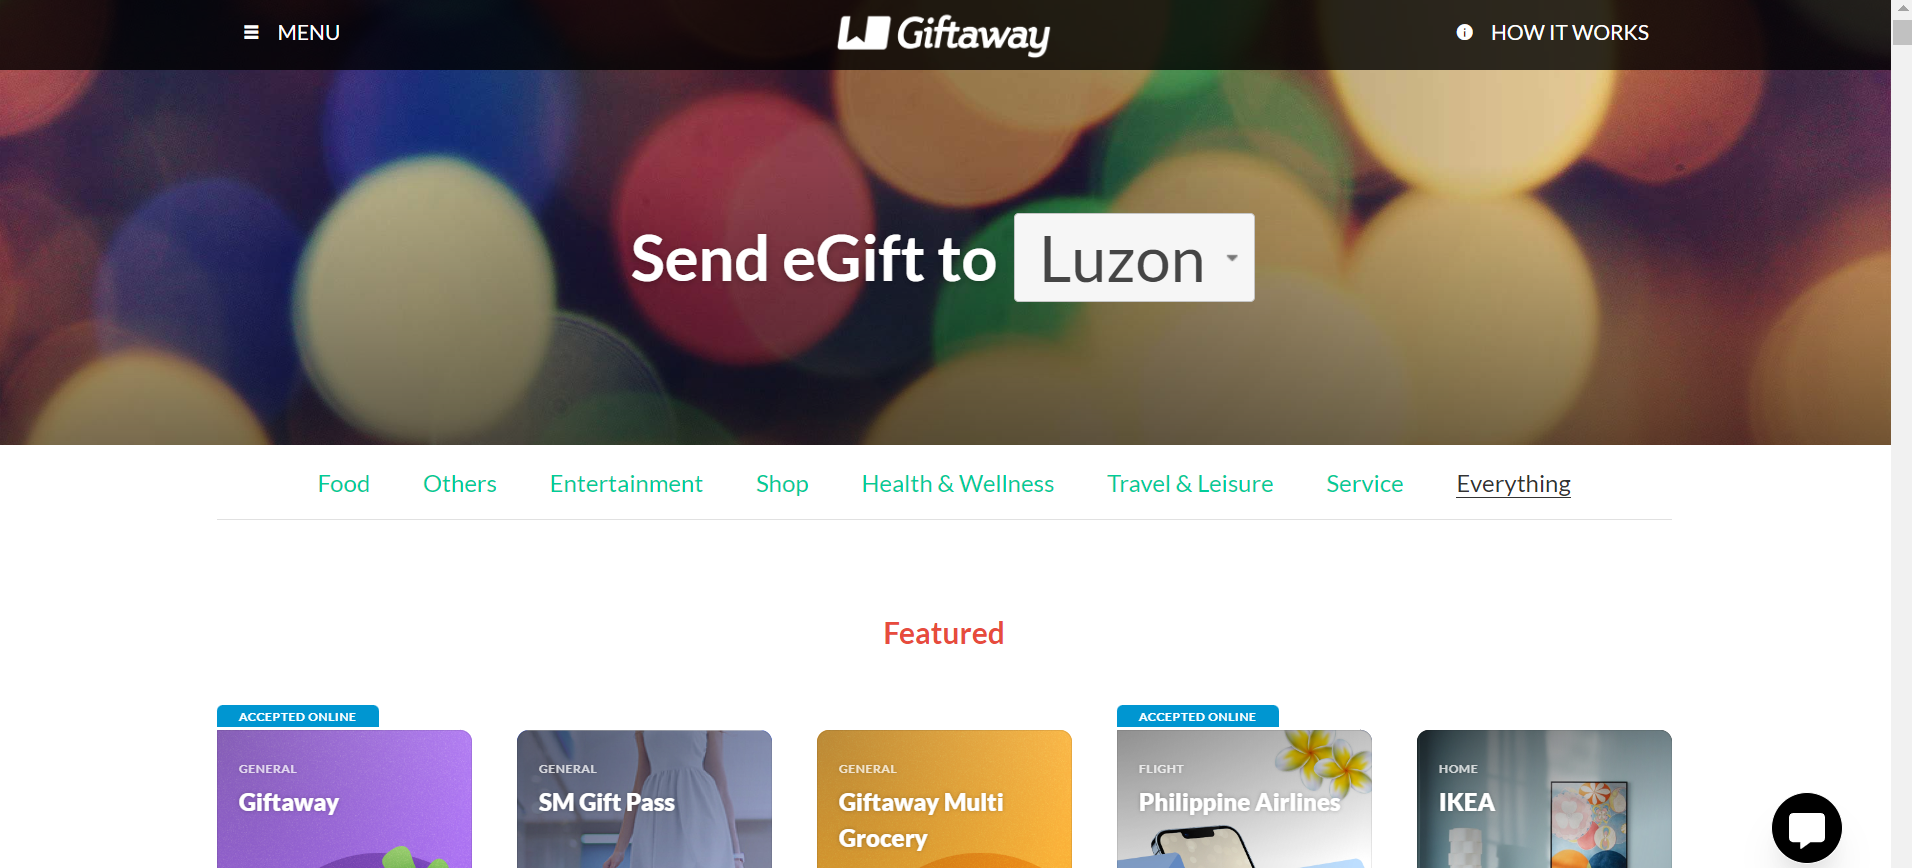 paano kunin at gamitin ang giftaway - giftaway website